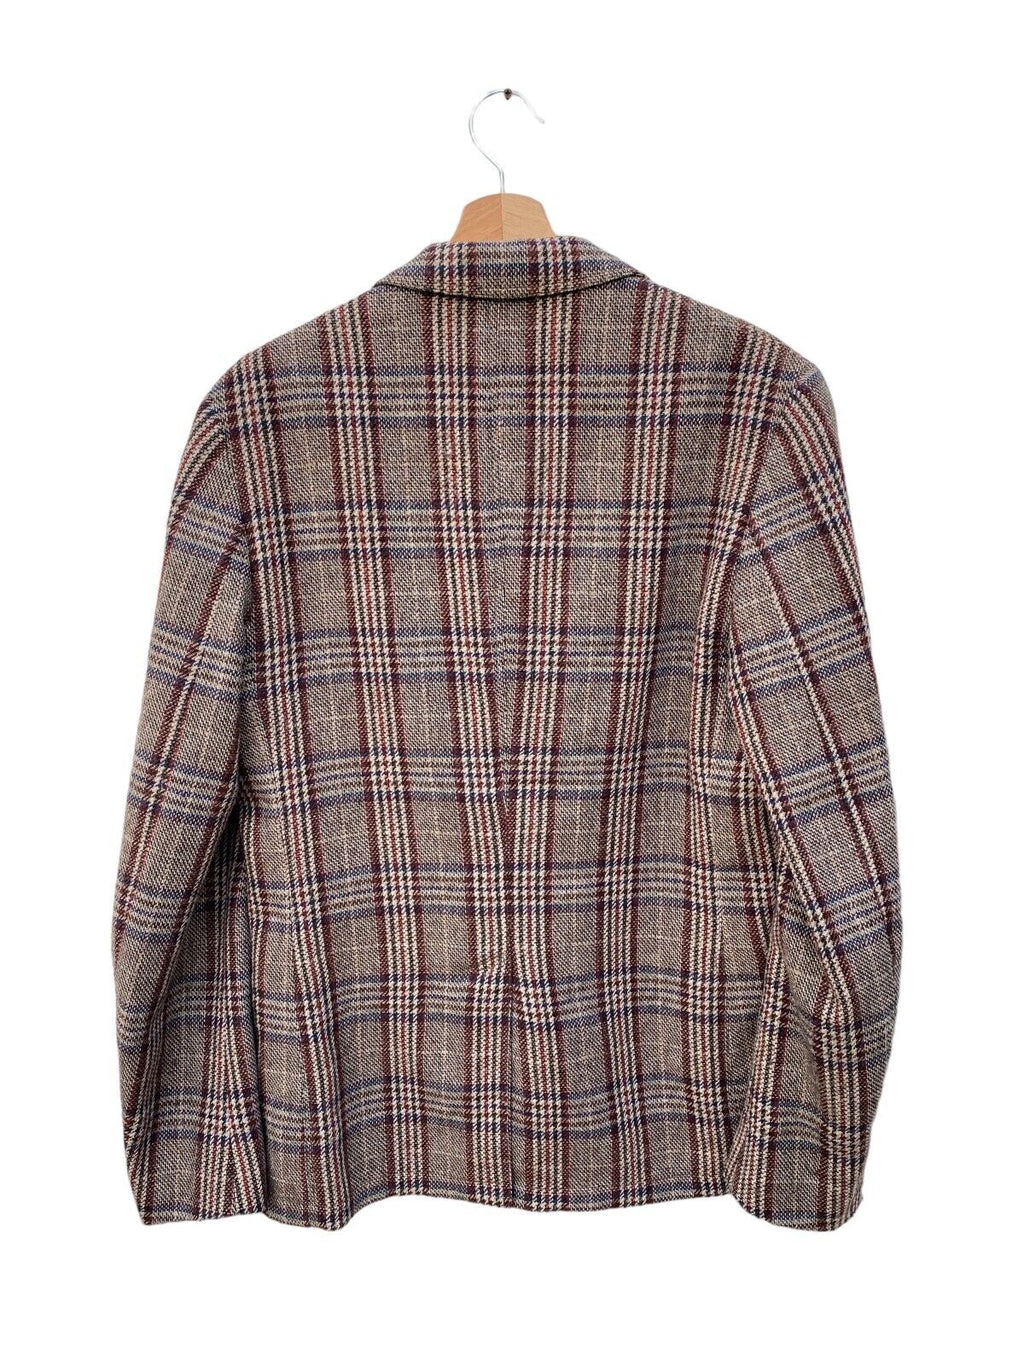 FW 2012 Brown Wool Checkered Blazer Jacket  Size 48 / M